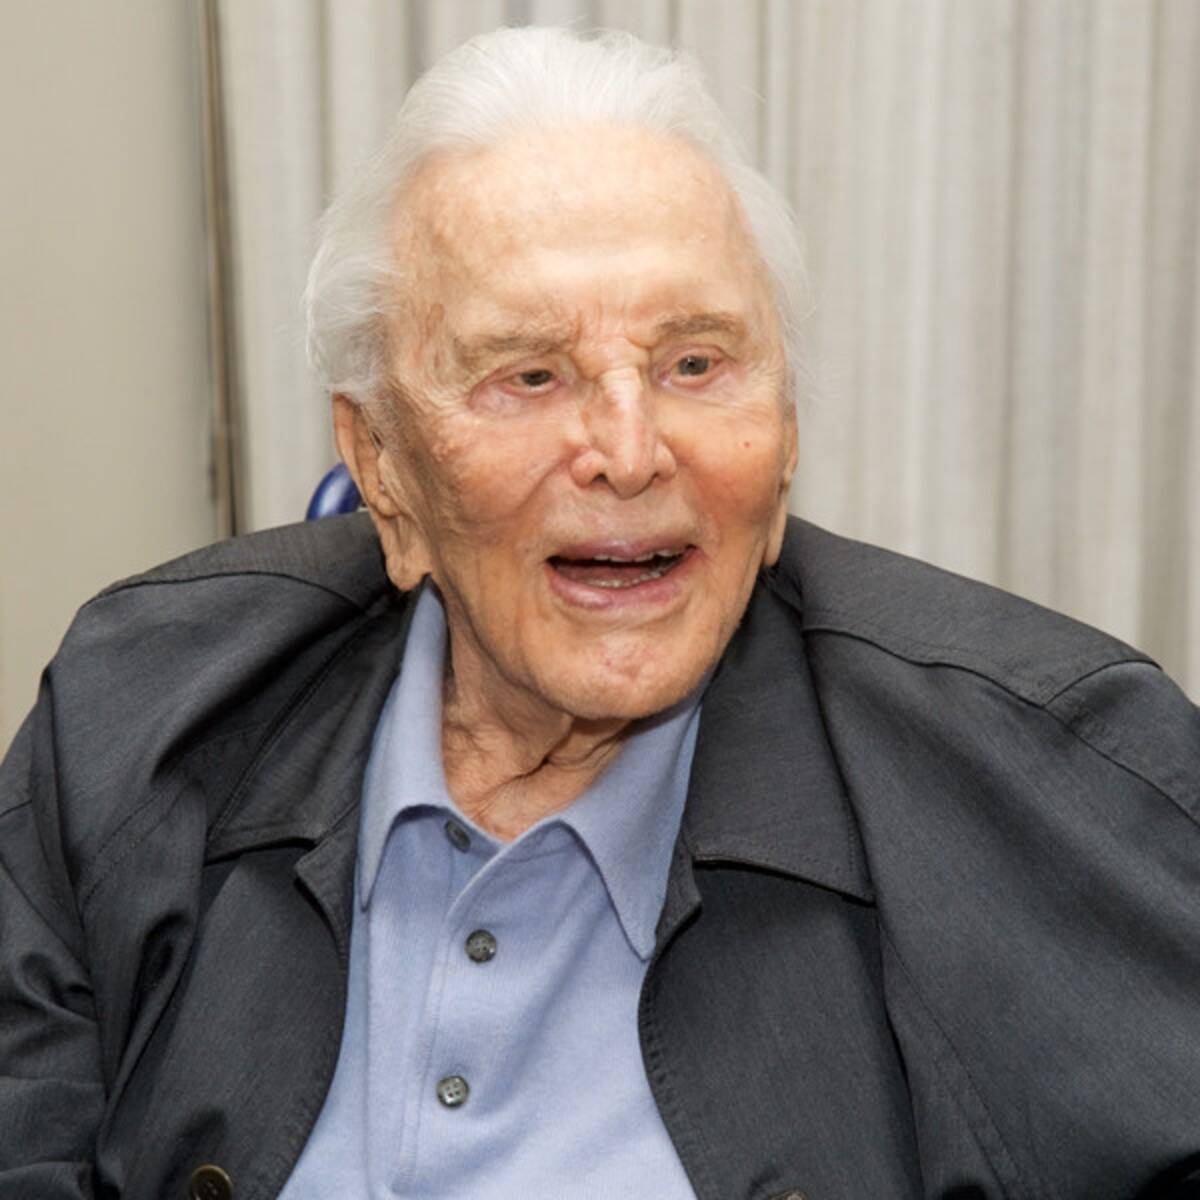 Hollywood legend Kirk Douglas dead at 103